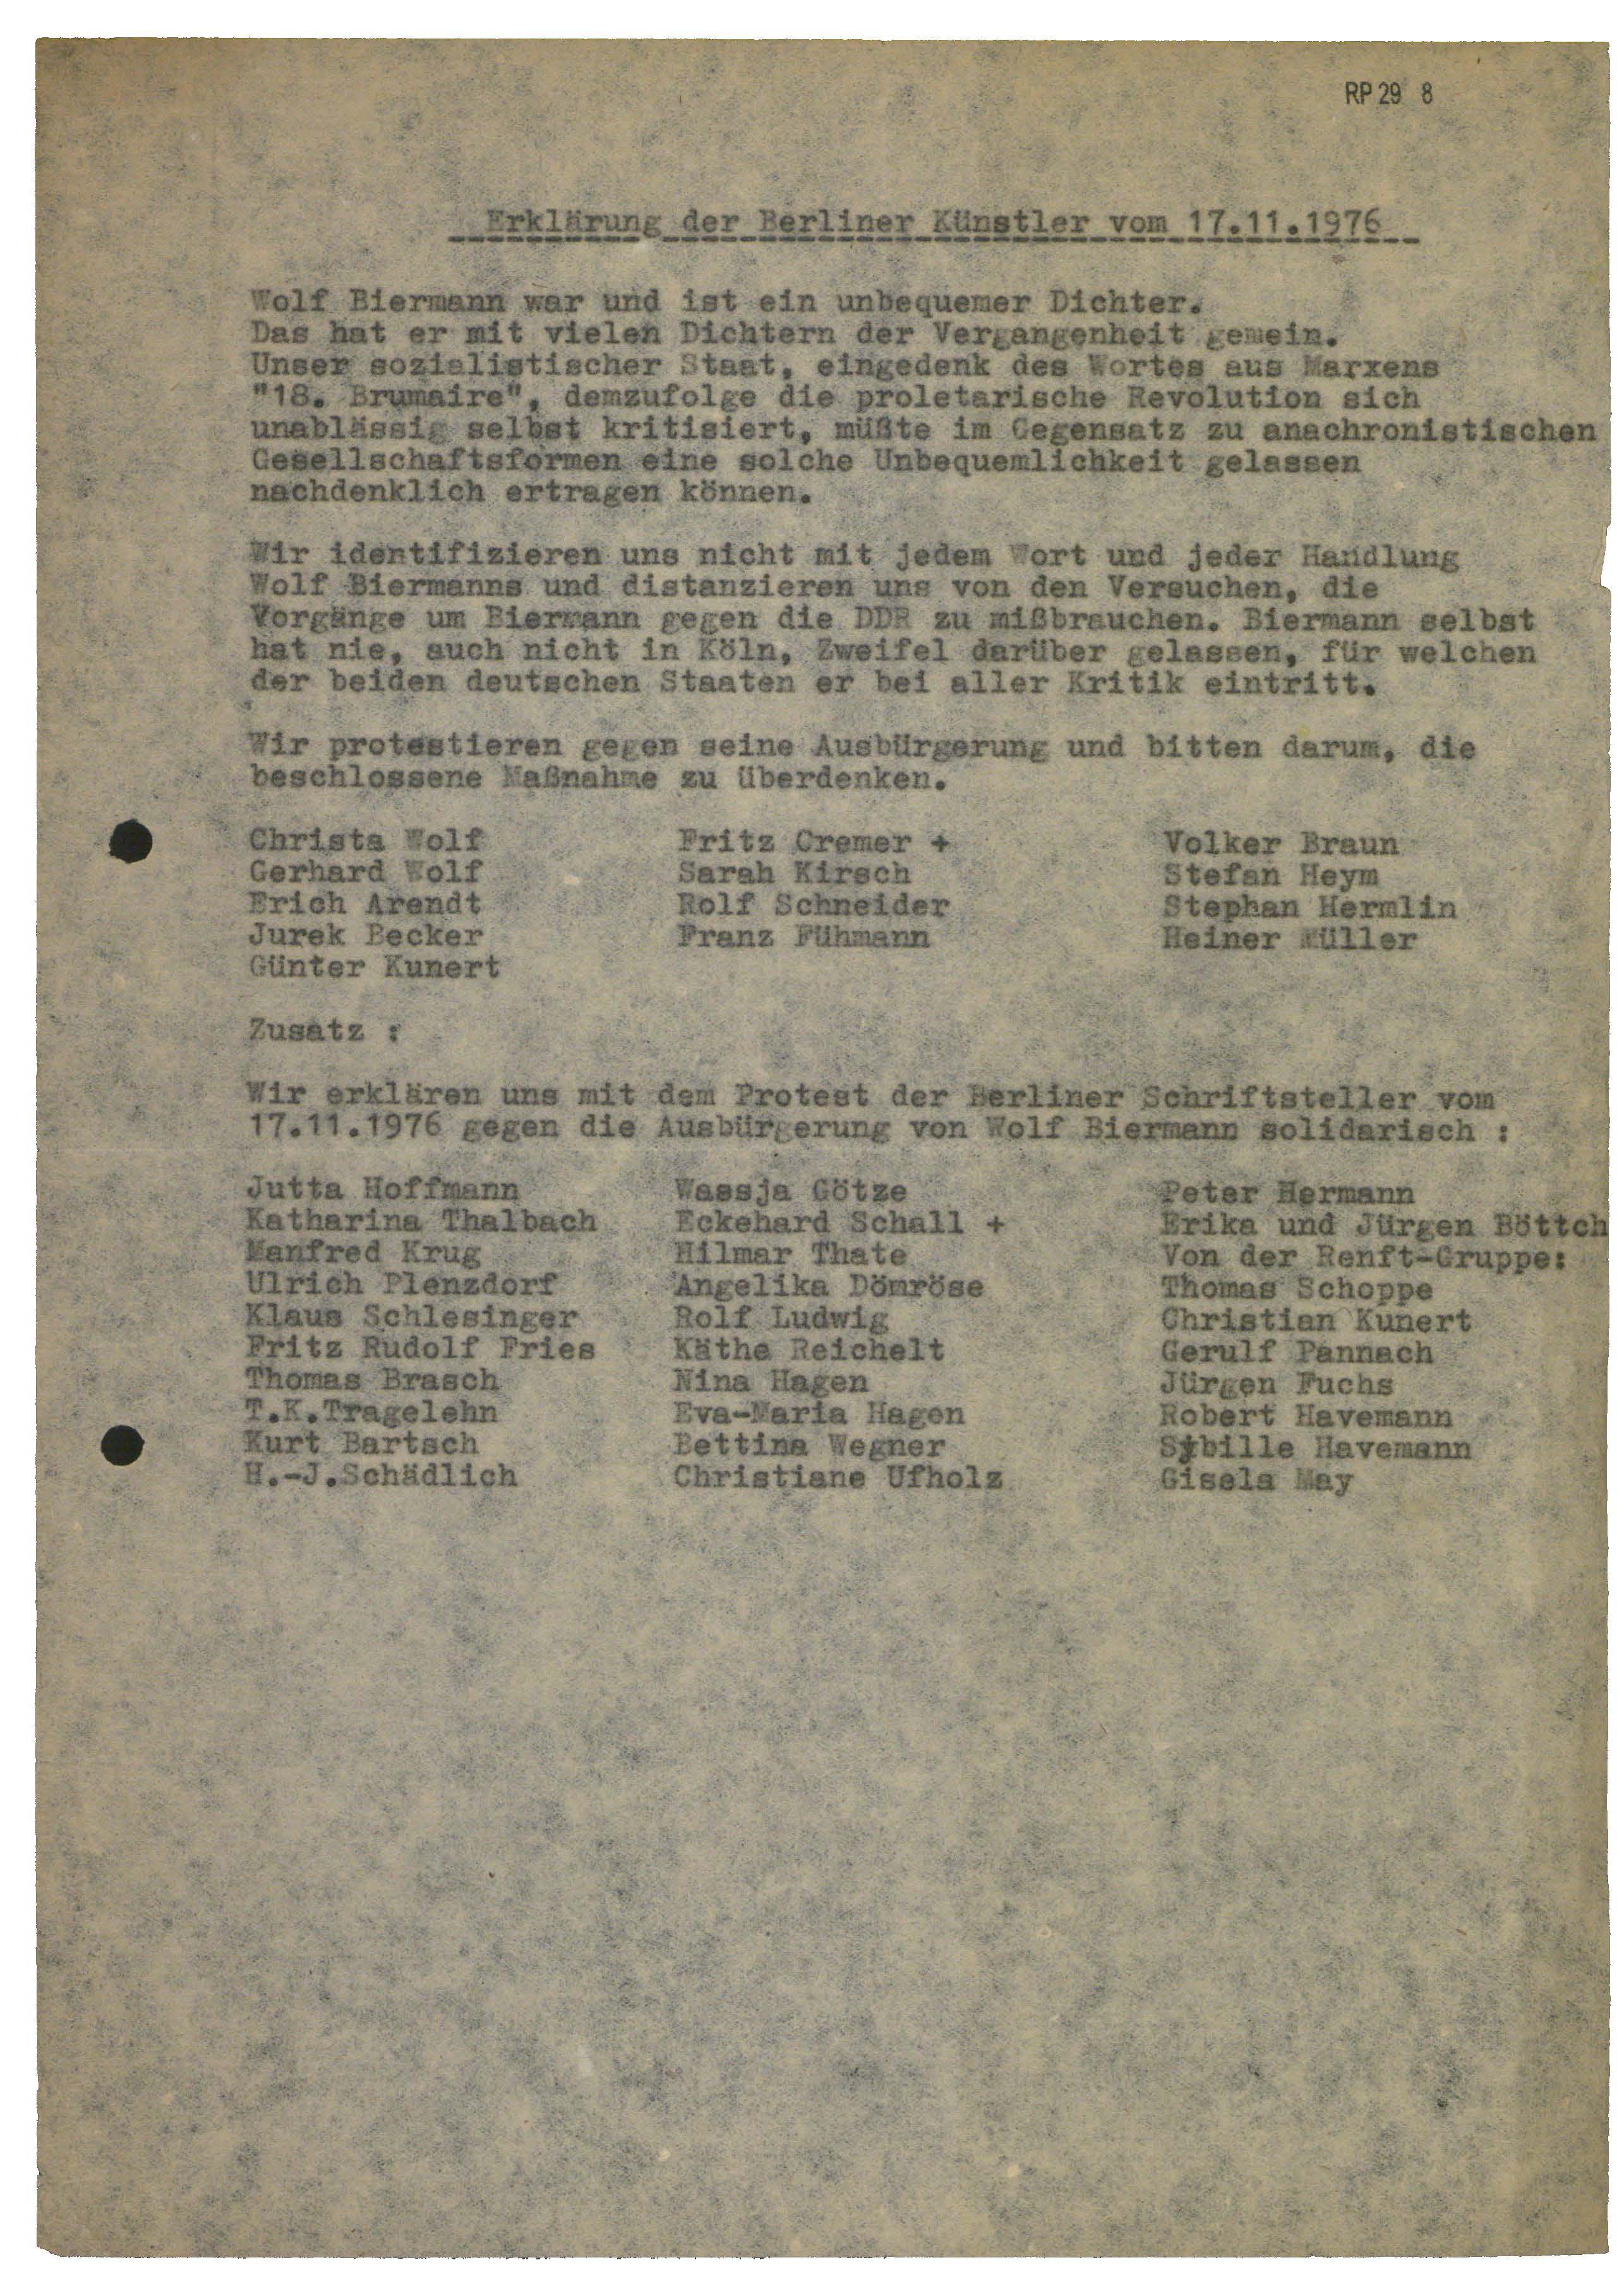 Erklärung der Berliner Künstler vom 17.11.1976